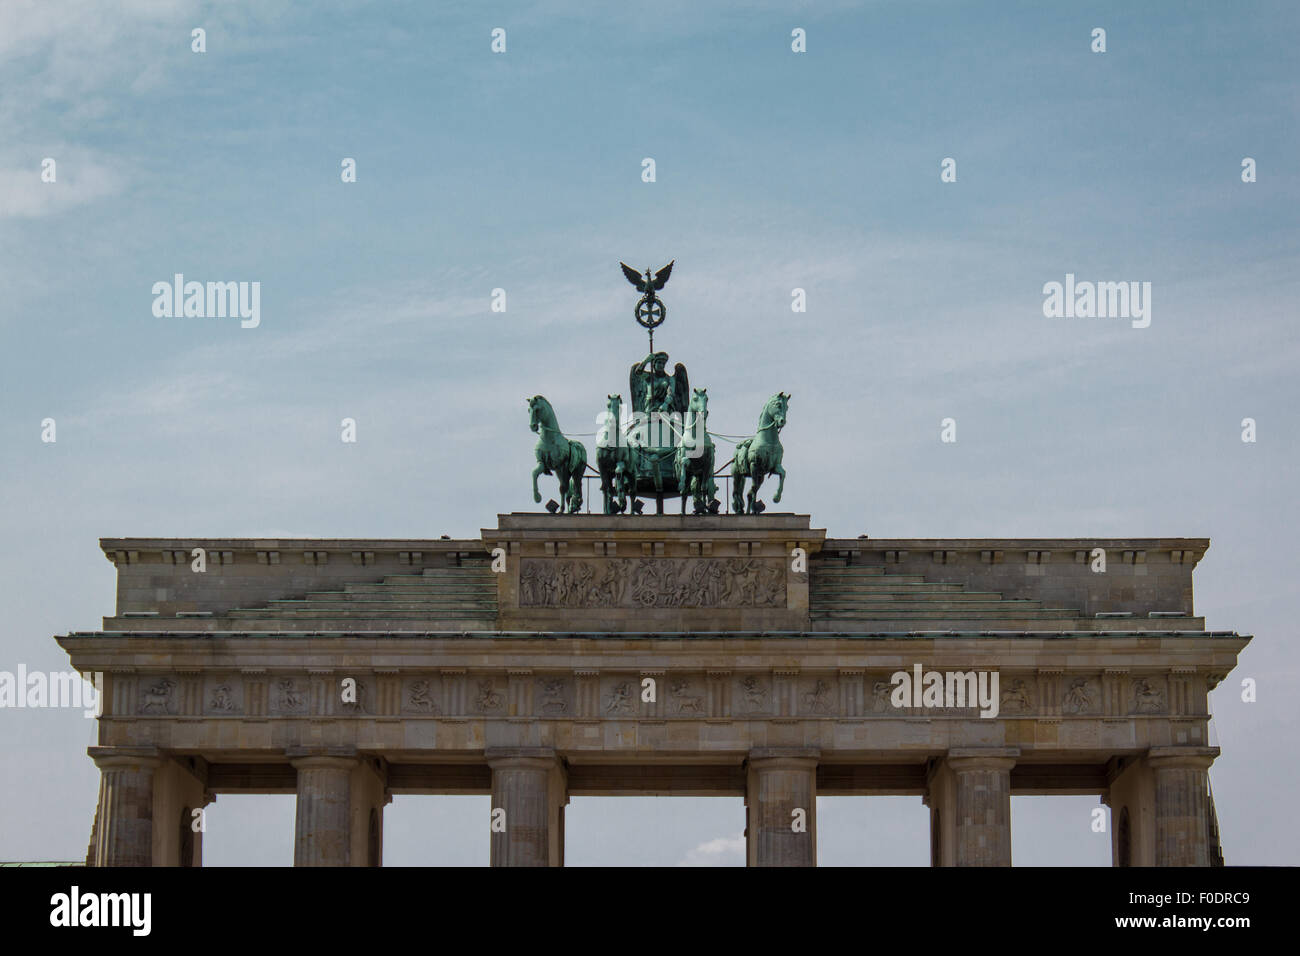 Puerta de Brandeburgo, Berlín, Alemania Foto de stock